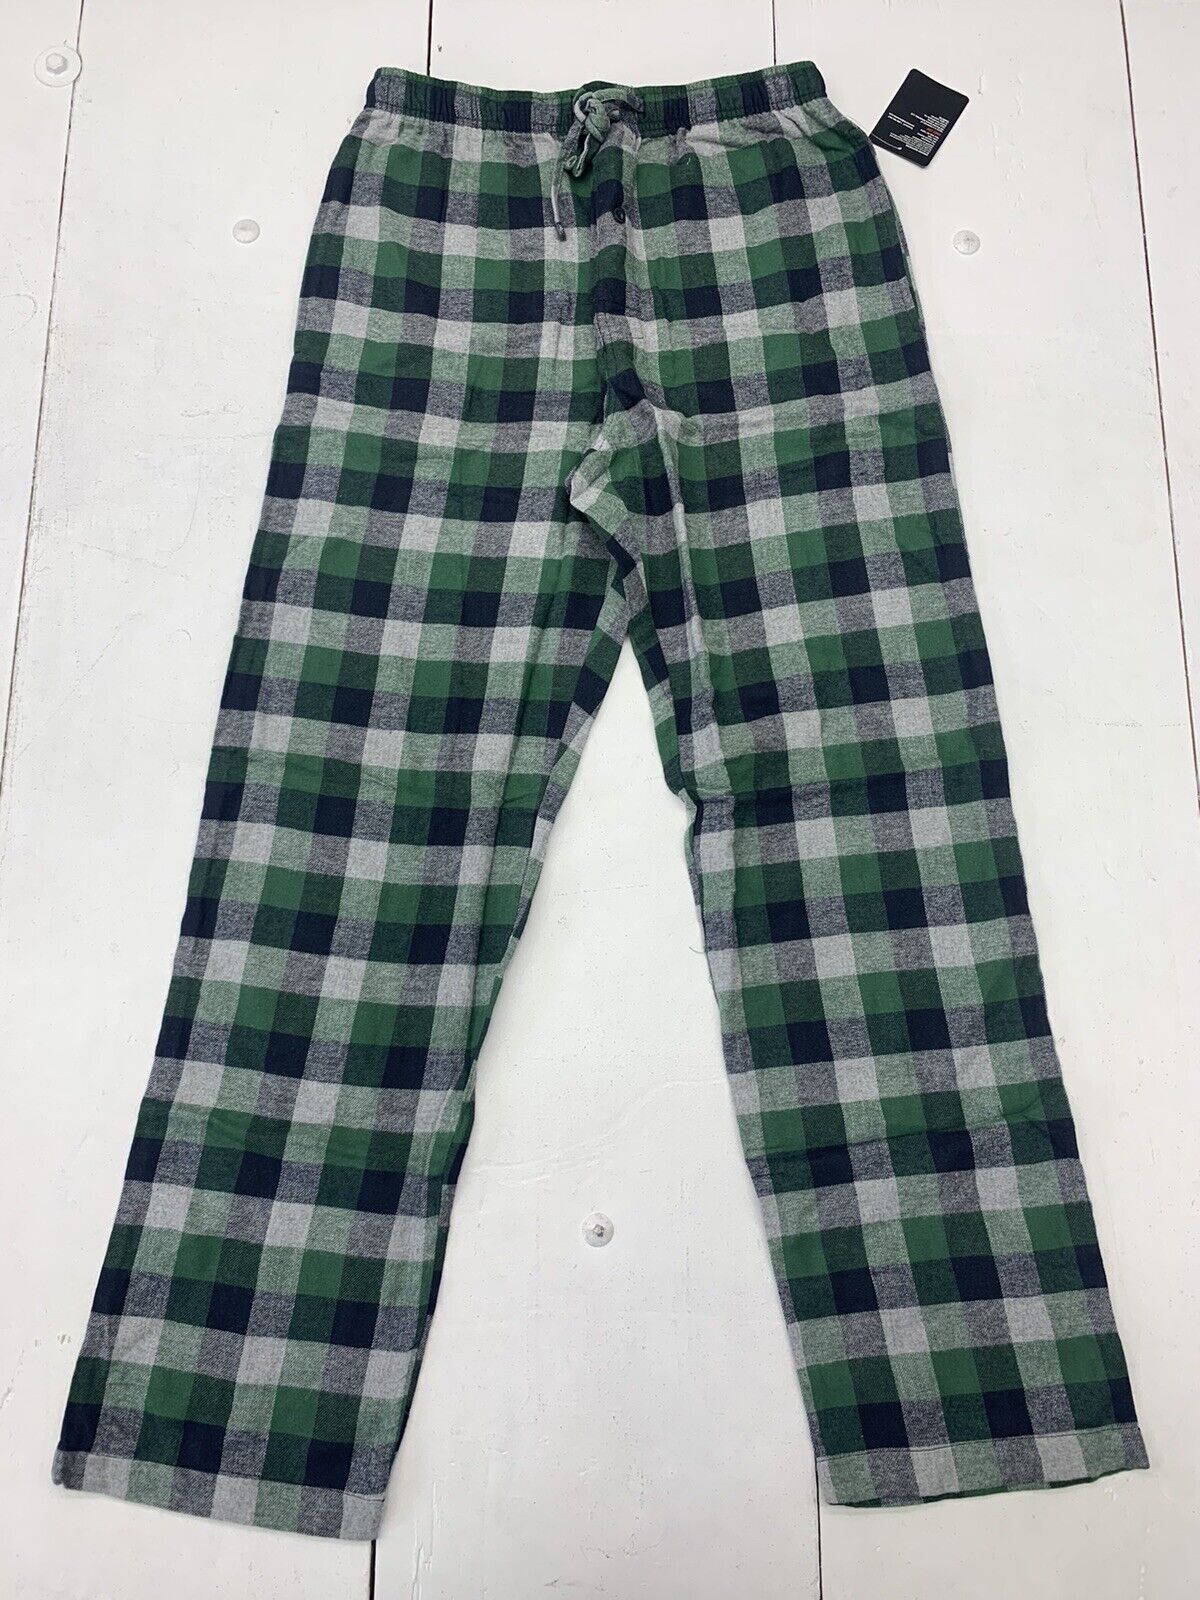 Hanes Mens Flannel Pajamas, 2XL, Green Plaid 